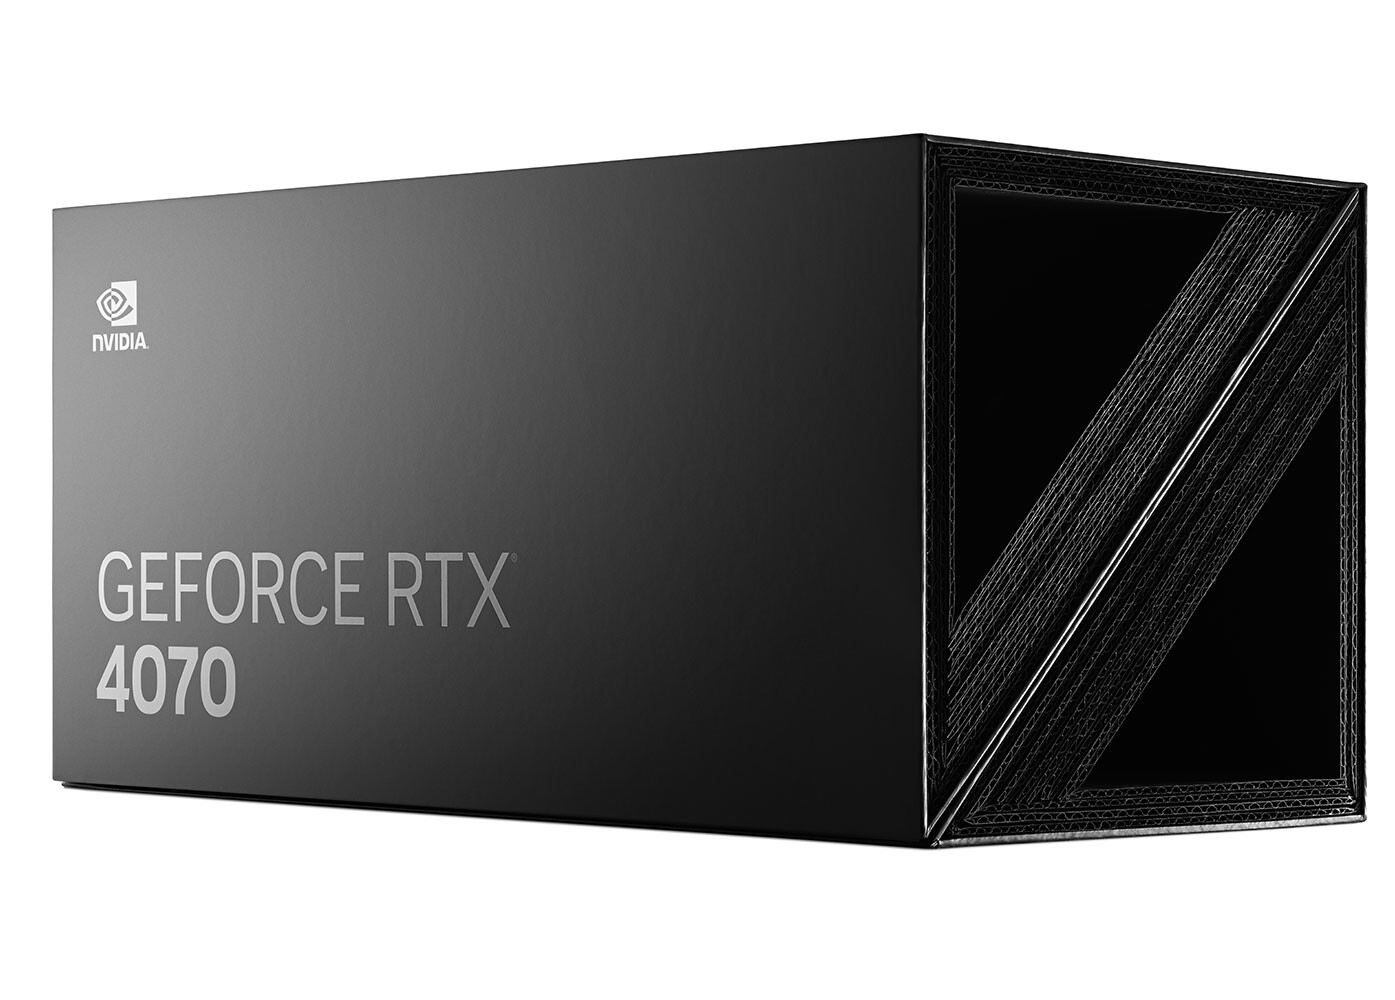 Immagine pubblicata in relazione al seguente contenuto: NVIDIA lancia la GeForce RTX 4070 e promette gaming al top a 1440p | Nome immagine: news34355_NVIDIA-GeForce-RTX-4070-5.jpg